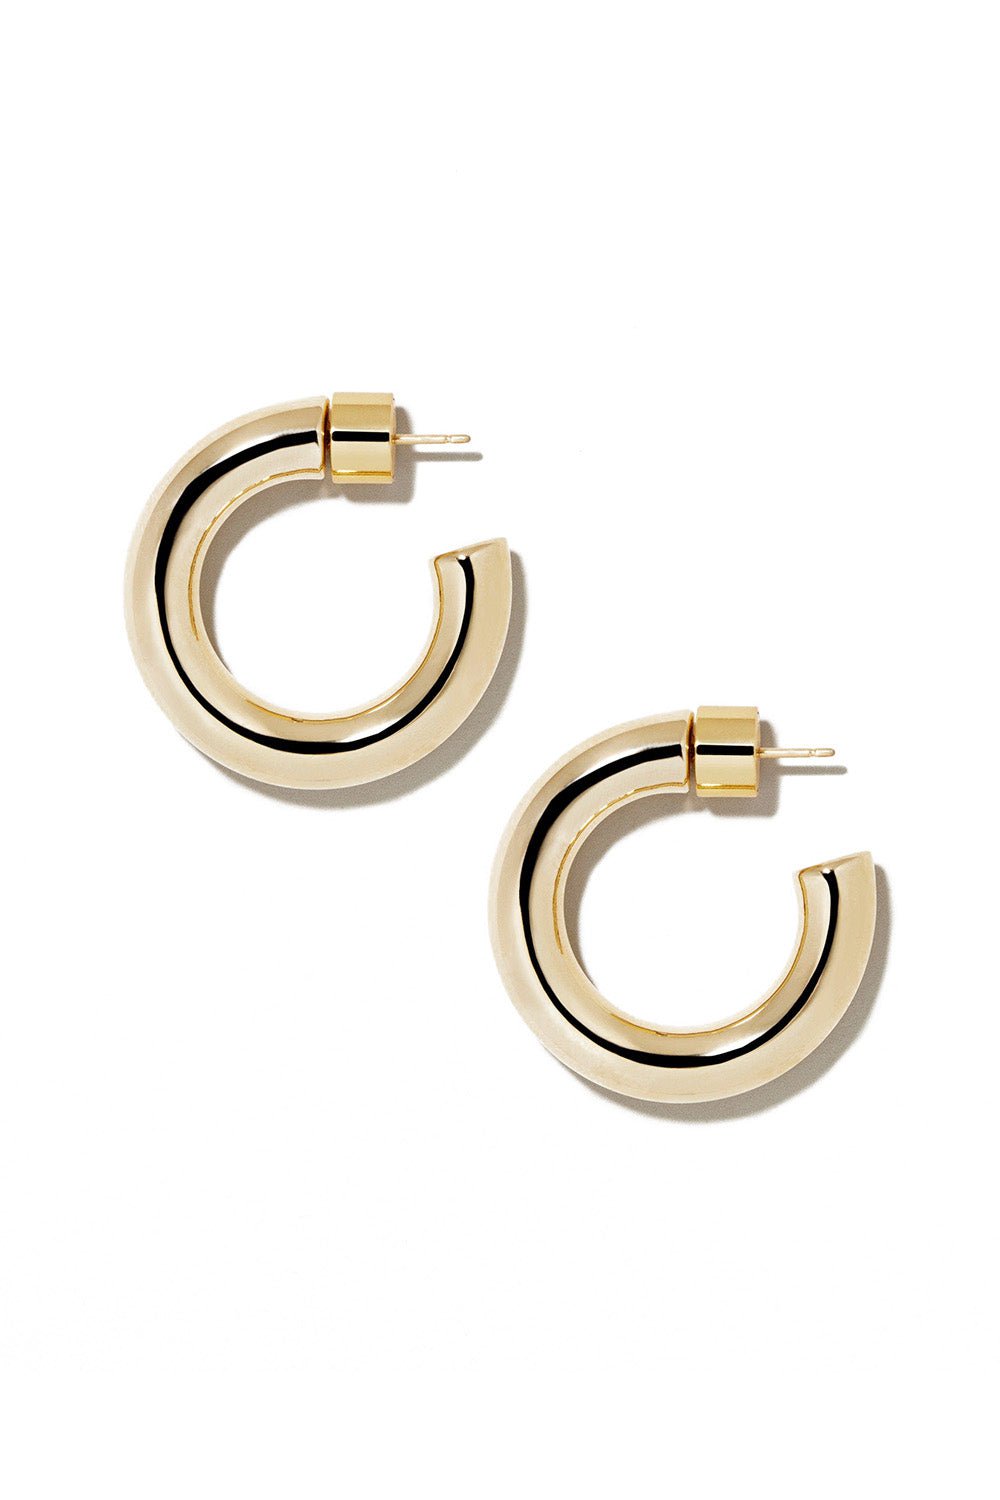 Jennifer Fisher Lilly Ear Cuff Earring - Gold-Tone Metal Ear Cuff, Earrings  - WJR24741 | The RealReal